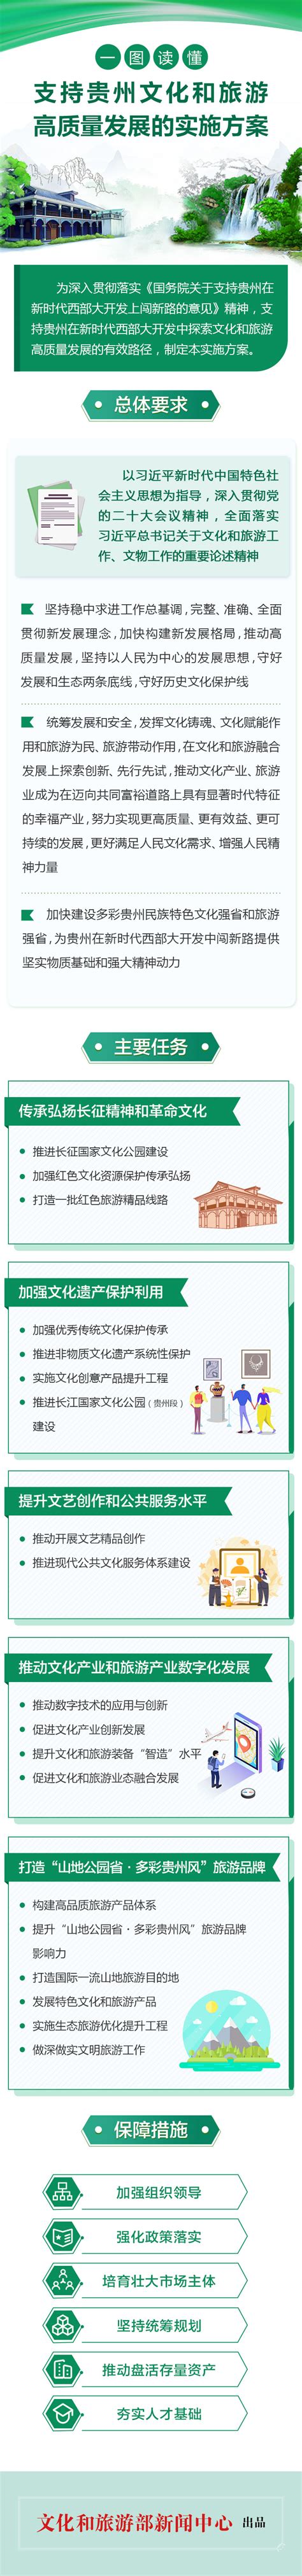 2019年贵州省旅游发展现状及发展策略分析[图]_智研咨询